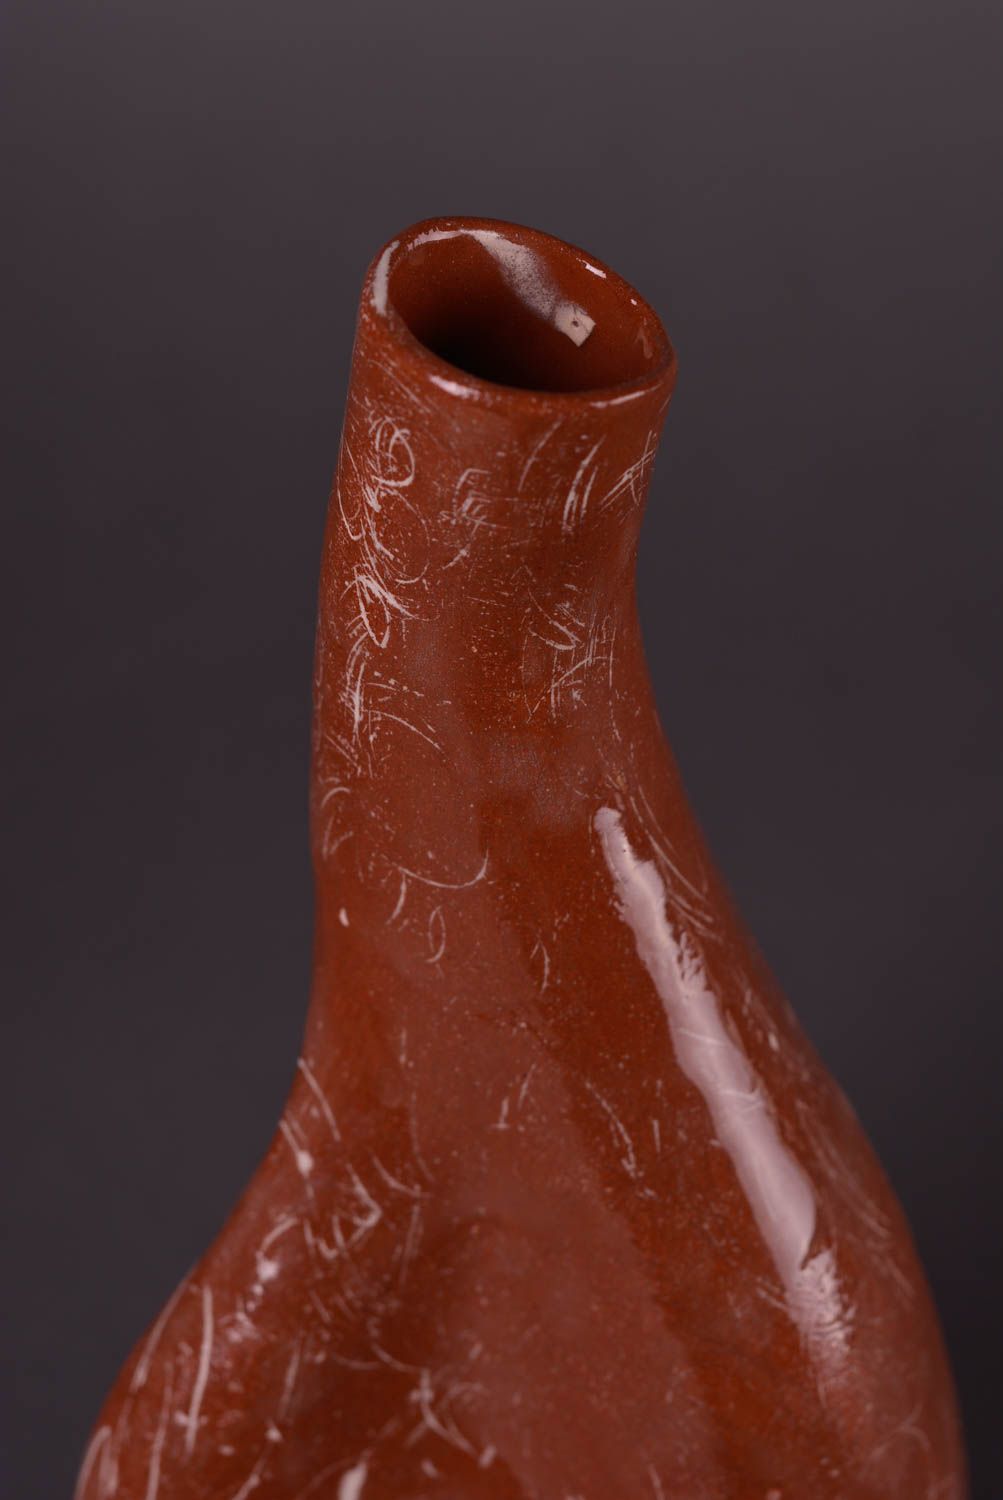 Подарок ручной работы глиняная бутылка необычная керамическая бутылка 700 мл фото 4